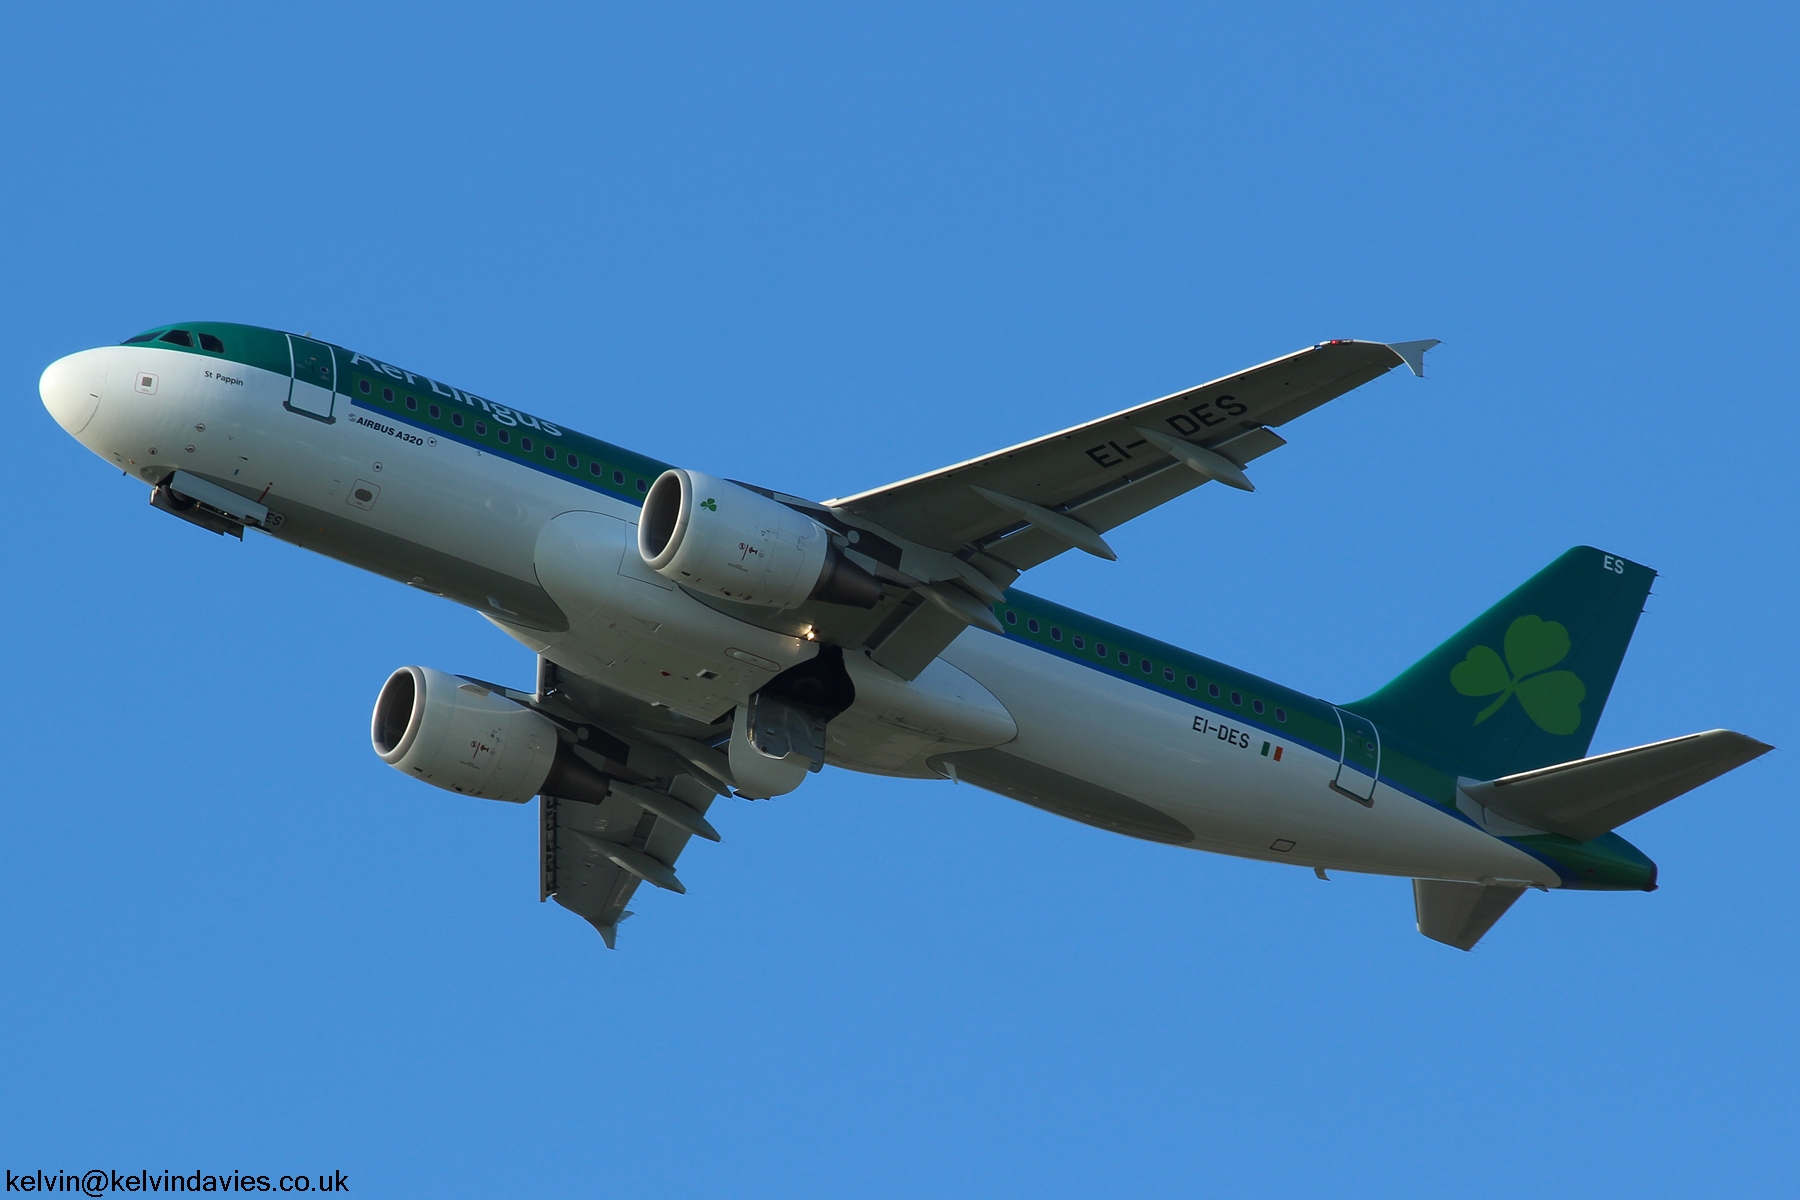 Aer Lingus A320 EI-DES